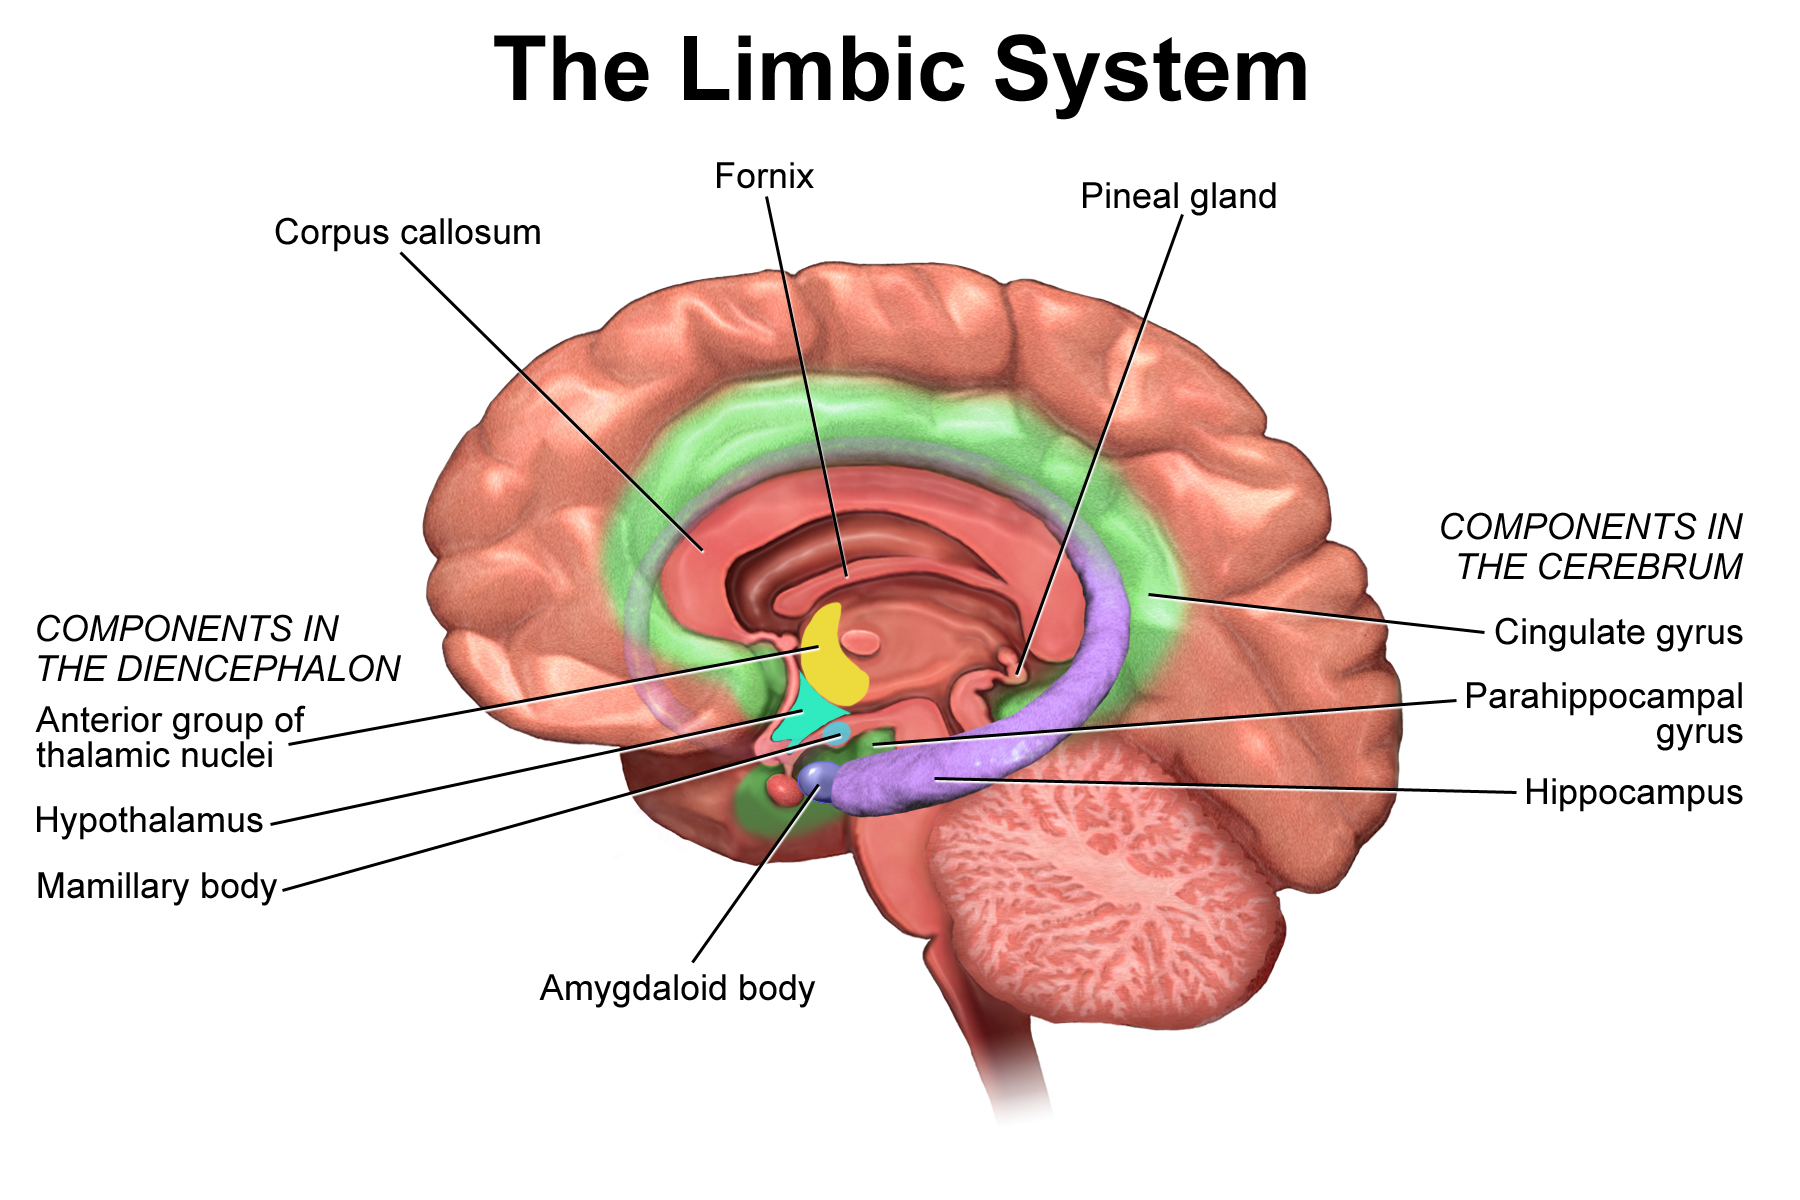 Diagrama del sistema límbico: todas las estructuras etiquetadas se enumeran en la leyenda